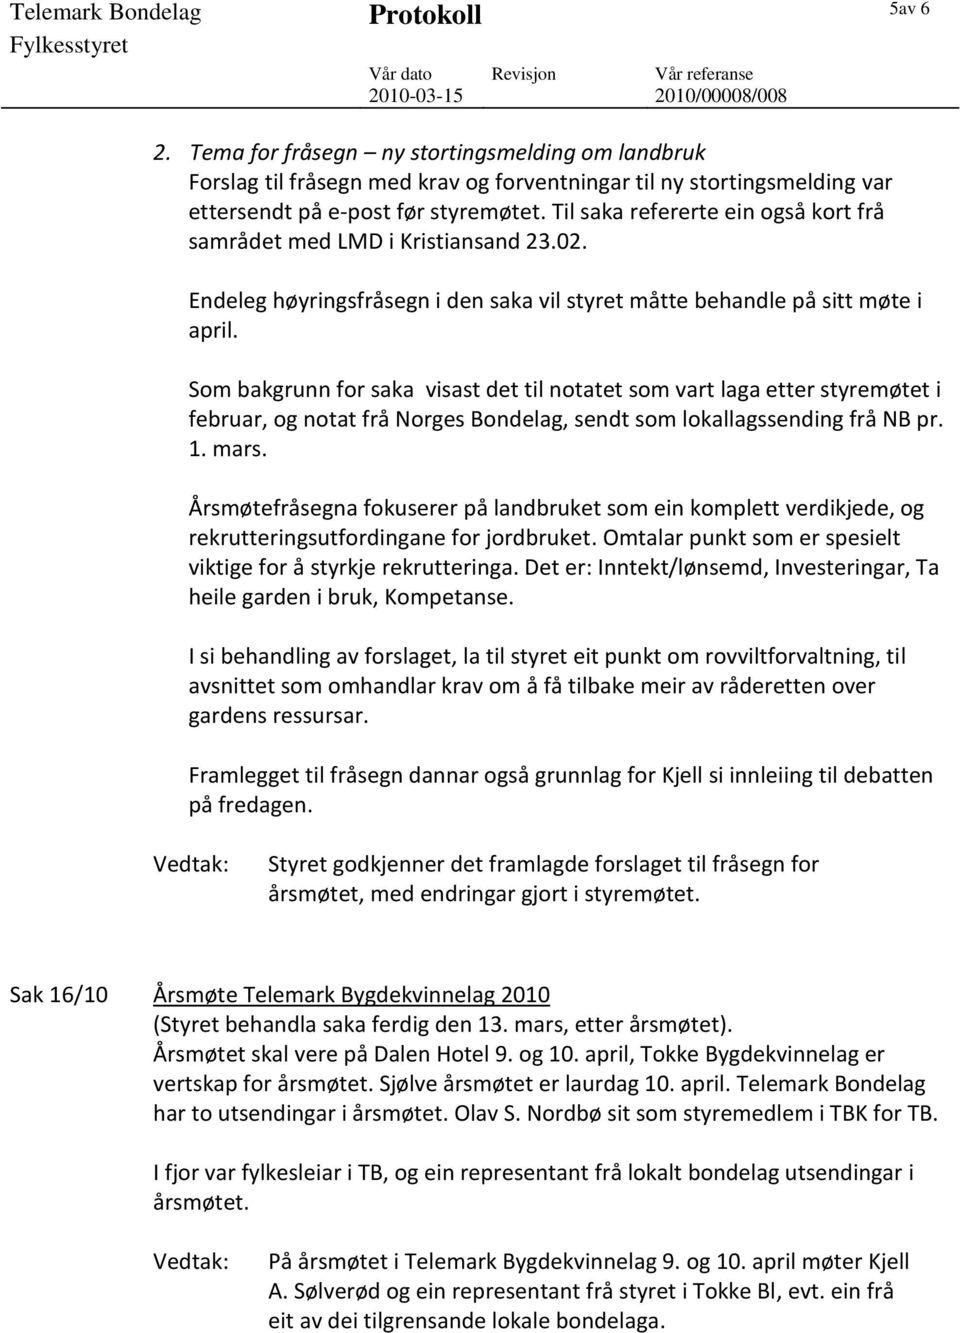 Som bakgrunn for saka visast det til notatet som vart laga etter styremøtet i februar, og notat frå Norges Bondelag, sendt som lokallagssending frå NB pr. 1. mars.